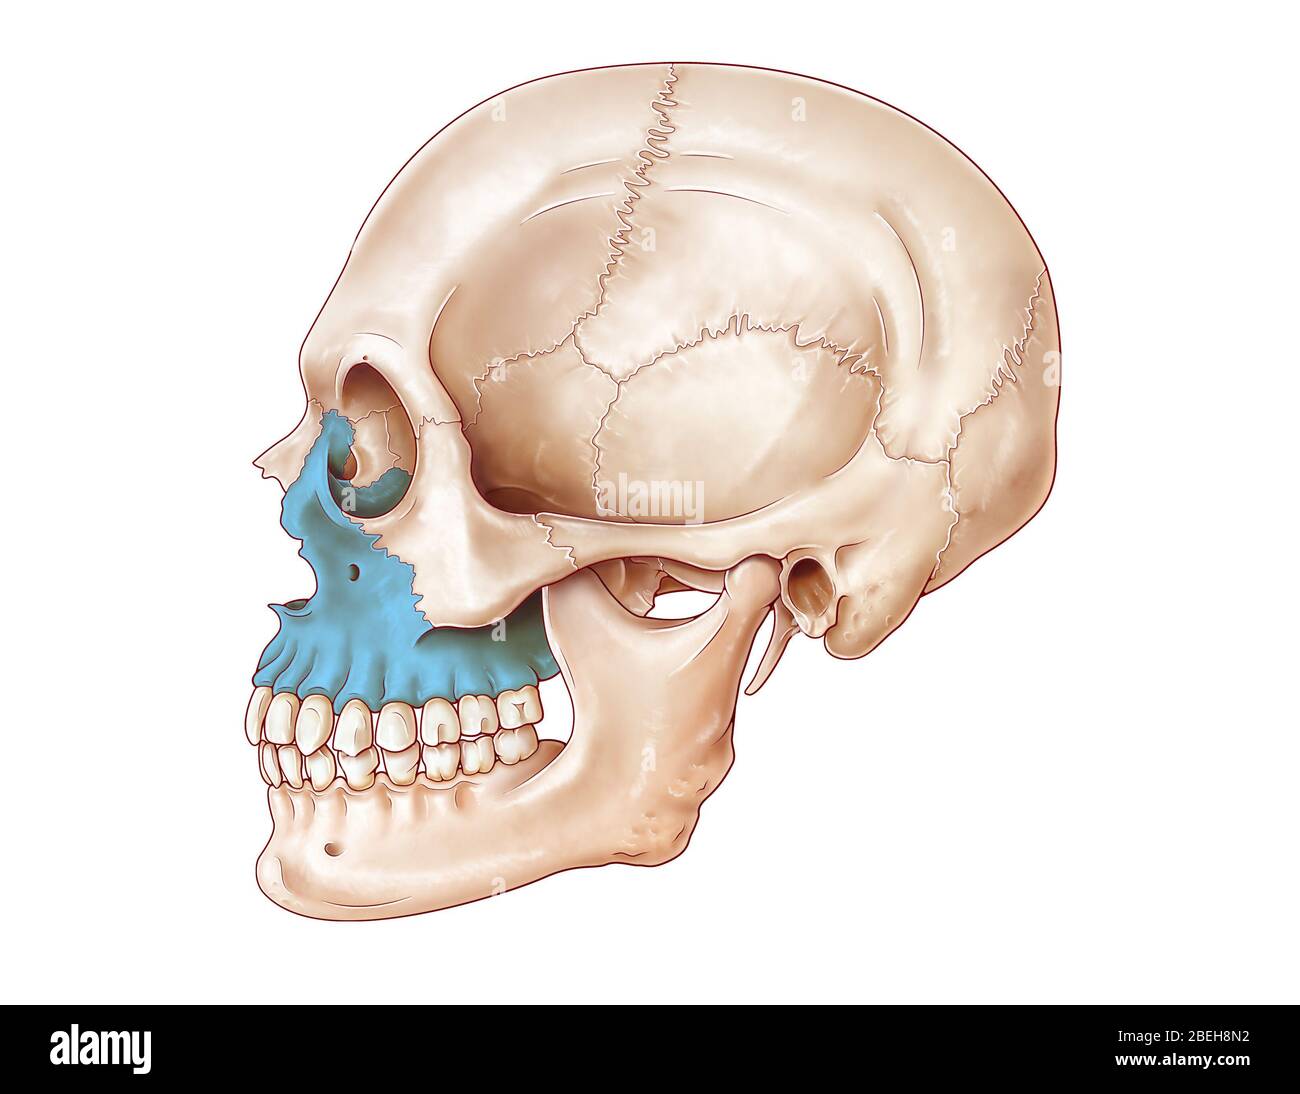 Illustration du crâne humain à partir d'une vue latérale, avec la maxillaire en bleu. Banque D'Images